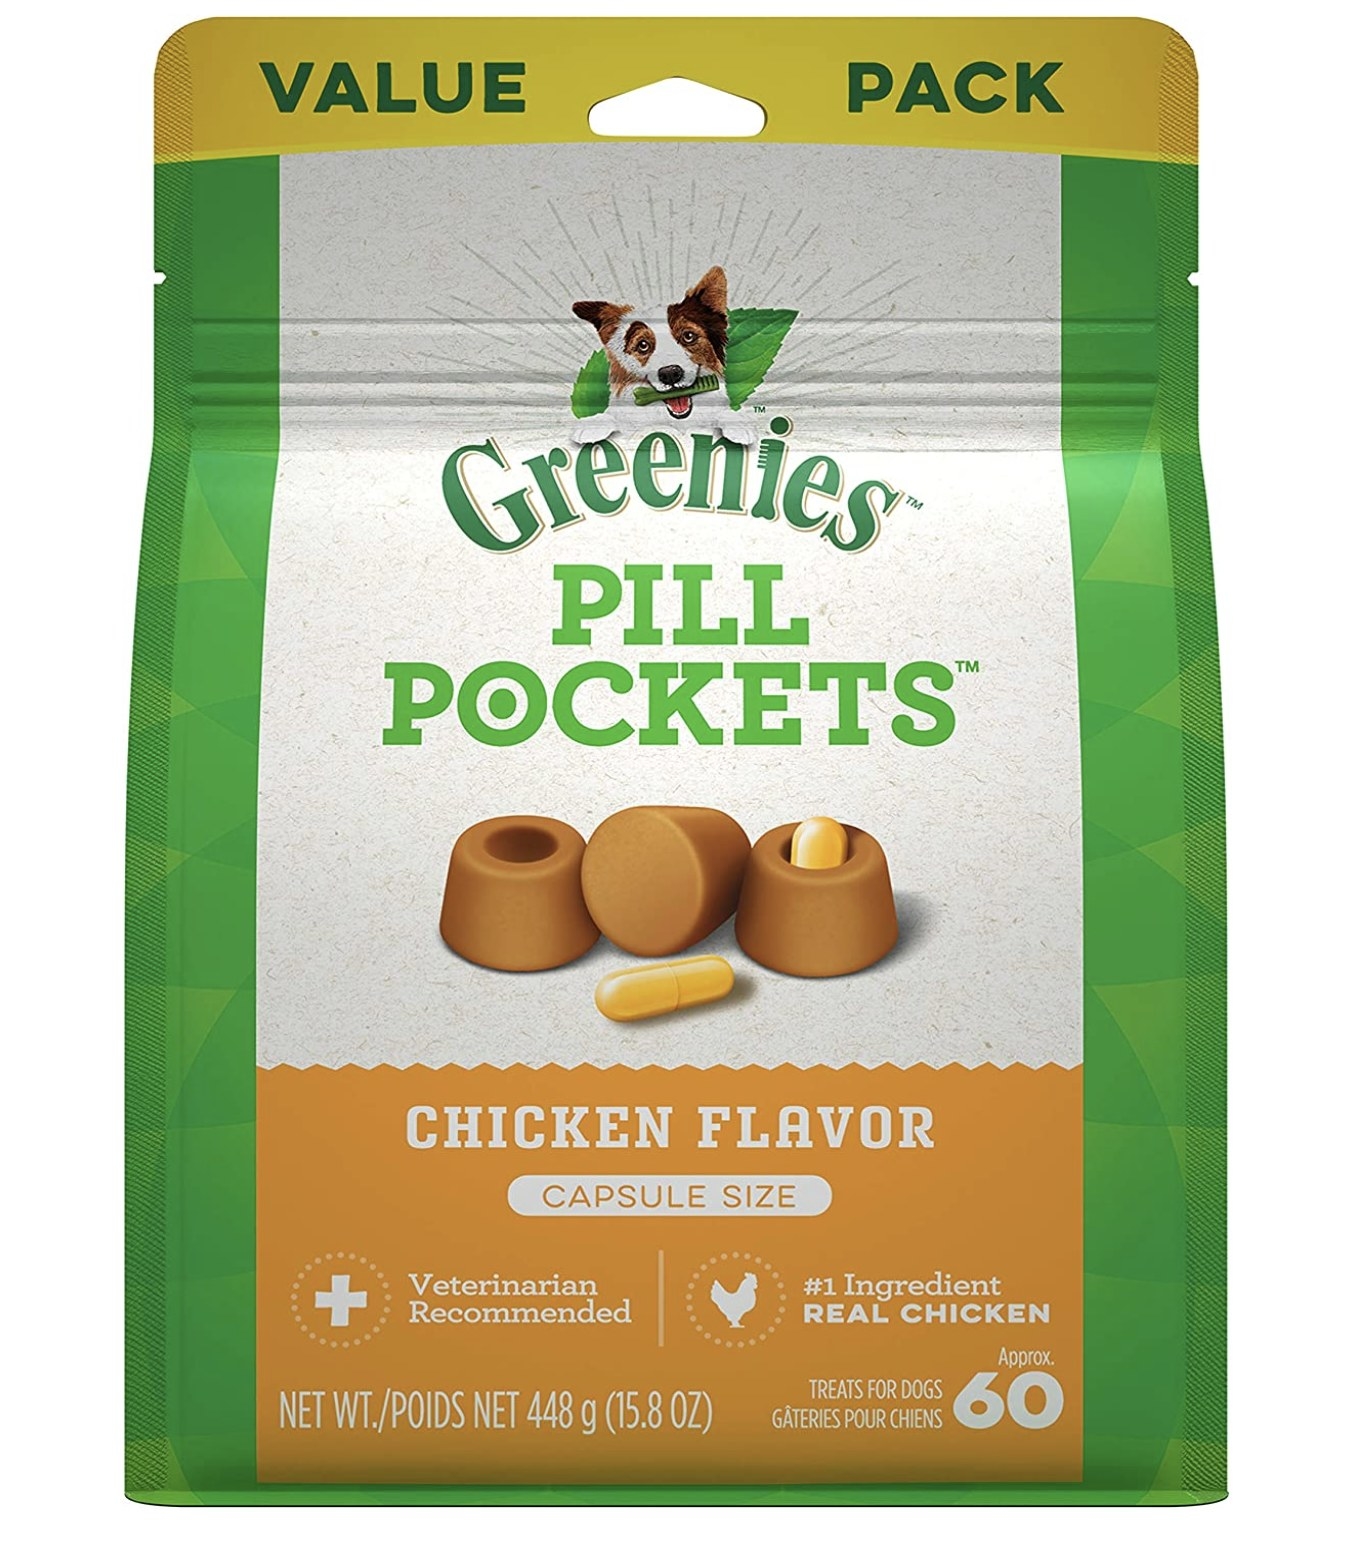 Greenies chicken flavor treats